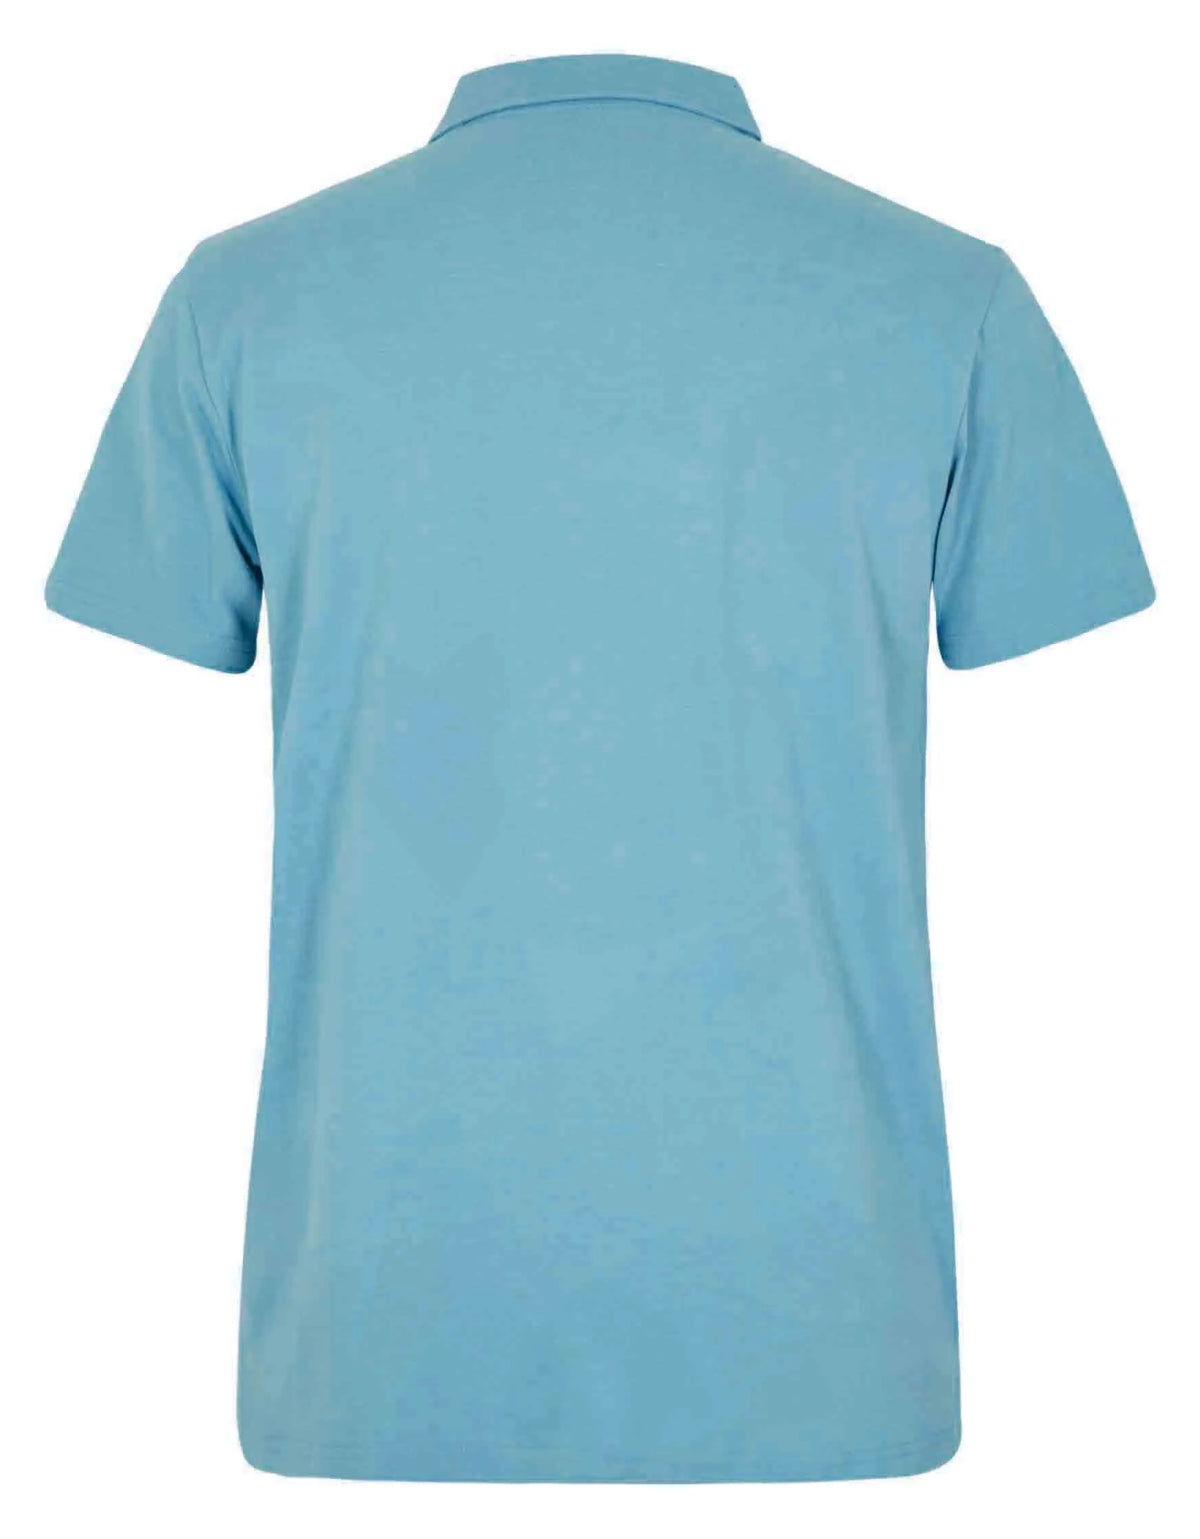 Men's plain jersey Jetstream polo shirt from Weird Fish in Sky Blue.